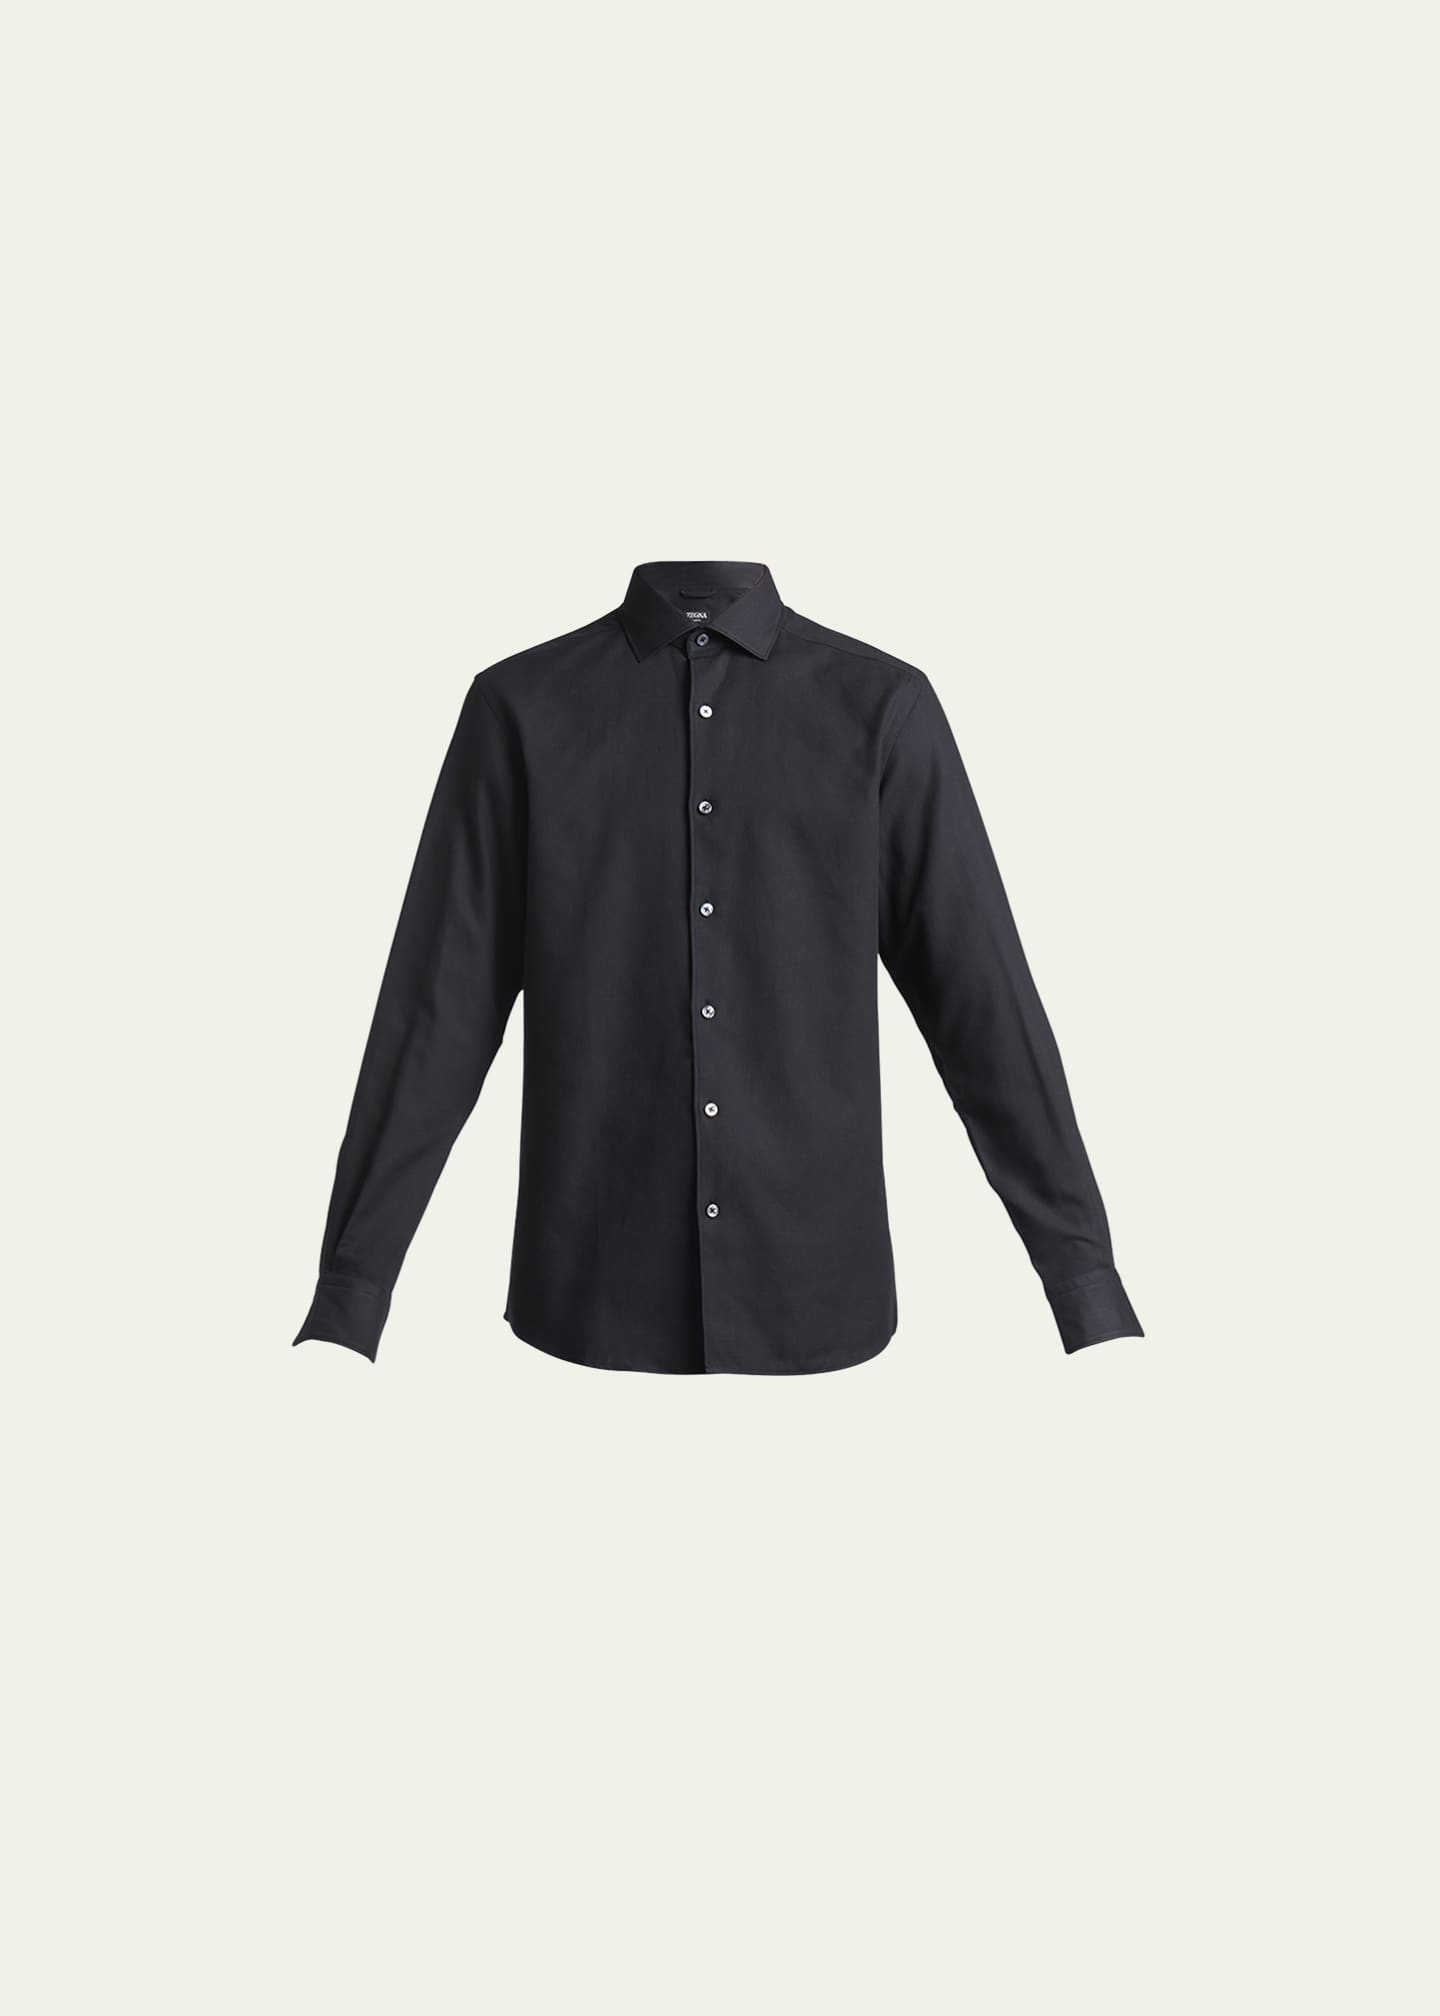 ZEGNA Men's Cashmere-Cotton Sport Shirt - Bergdorf Goodman